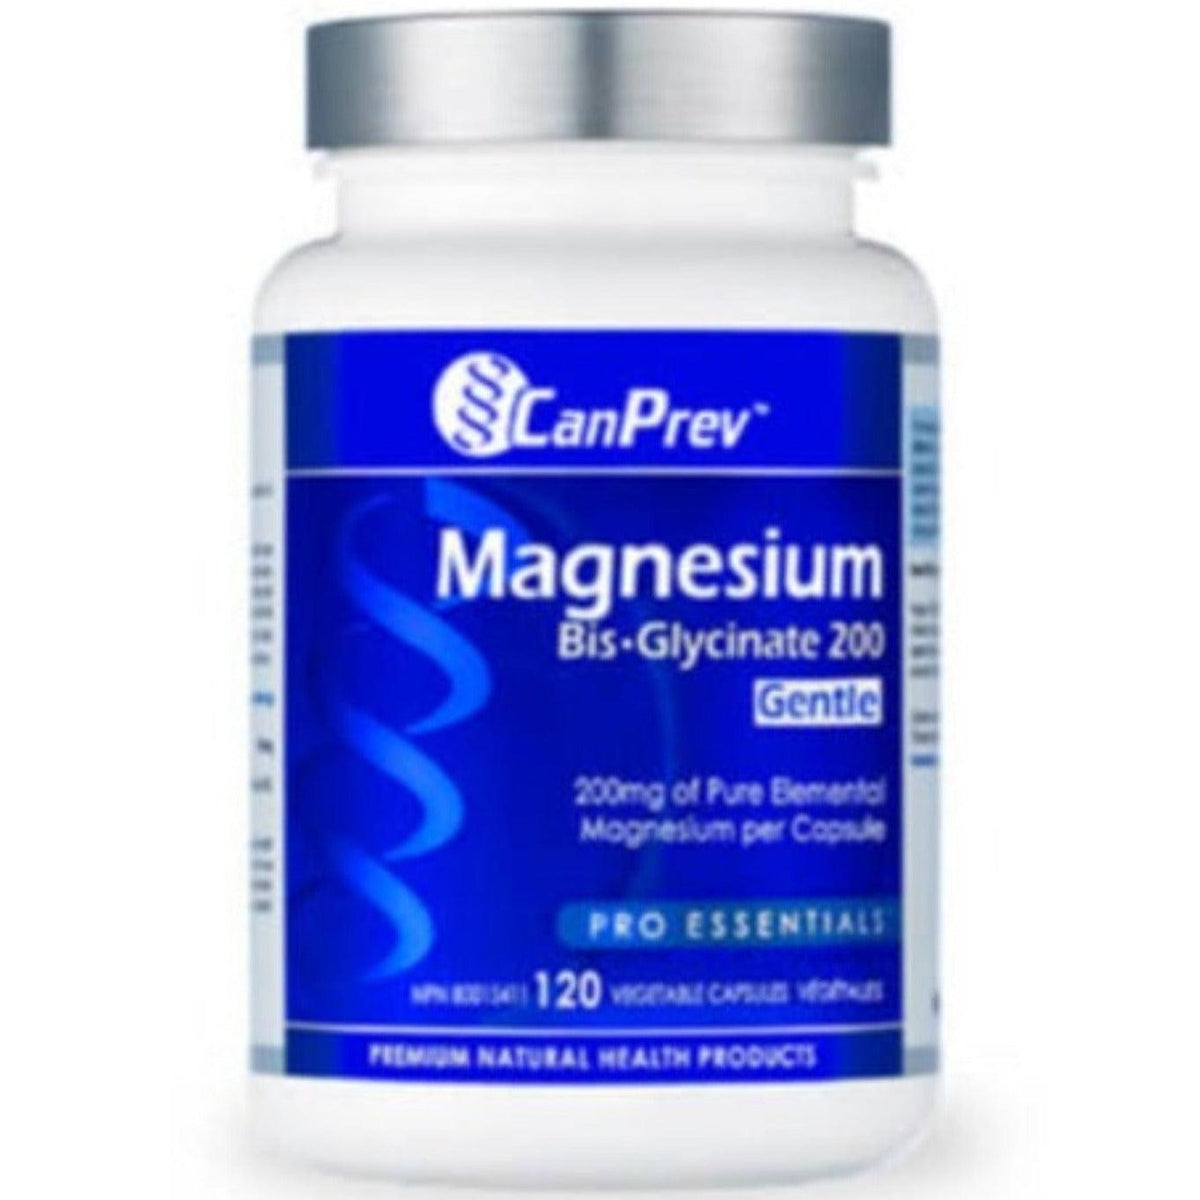 CanPrev Magnesium Bisglycinate 200mg Gentle 120/240 Veggie Caps Minerals - Magnesium at Village Vitamin Store